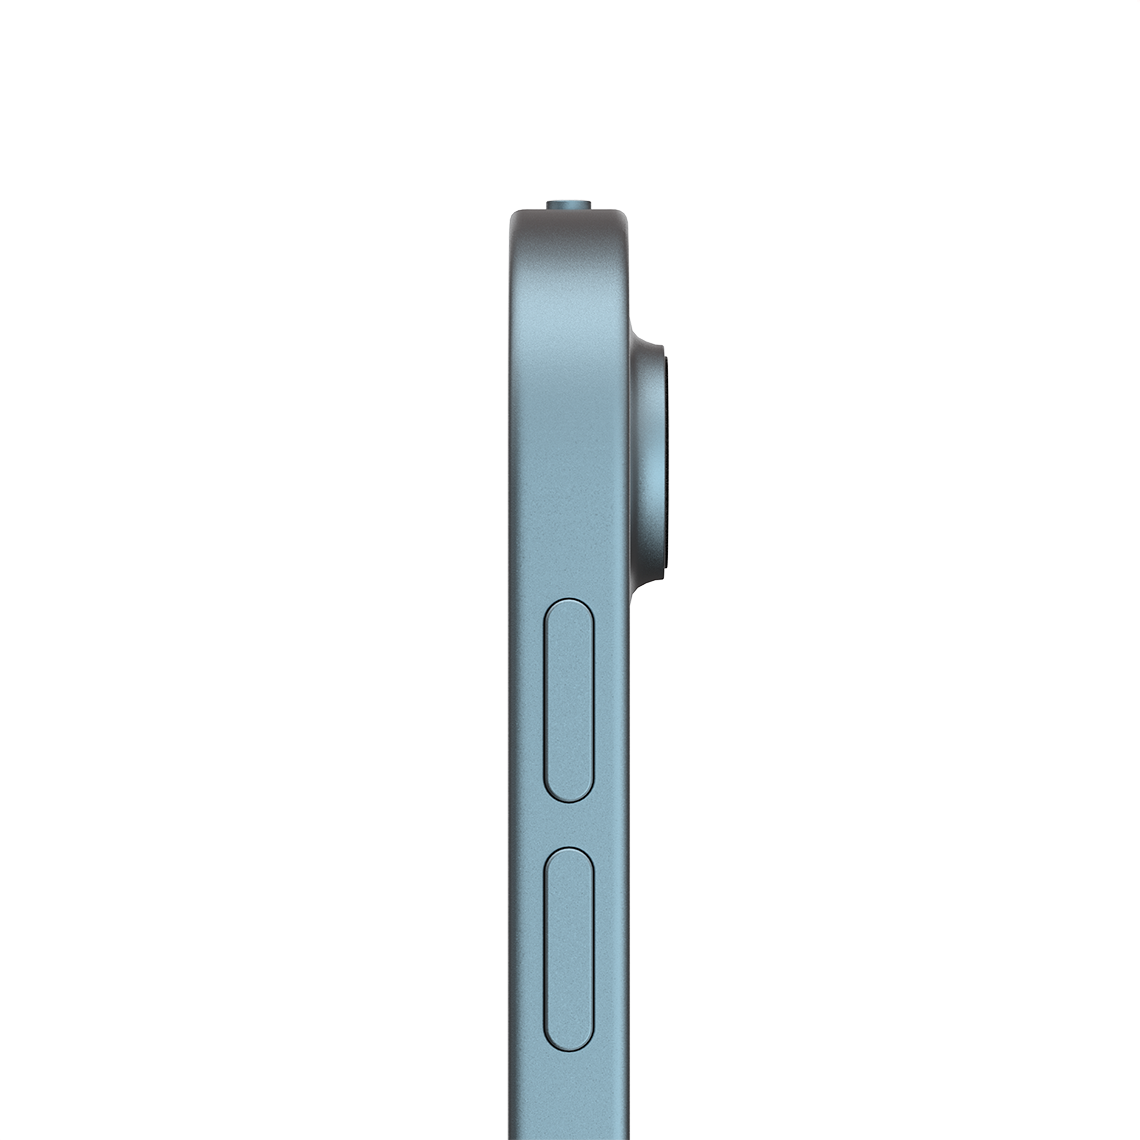 Apple iPad Air 10.9-inch 5th Generation - Blue - 64GB, Wi-Fi + Cellular, Grade B